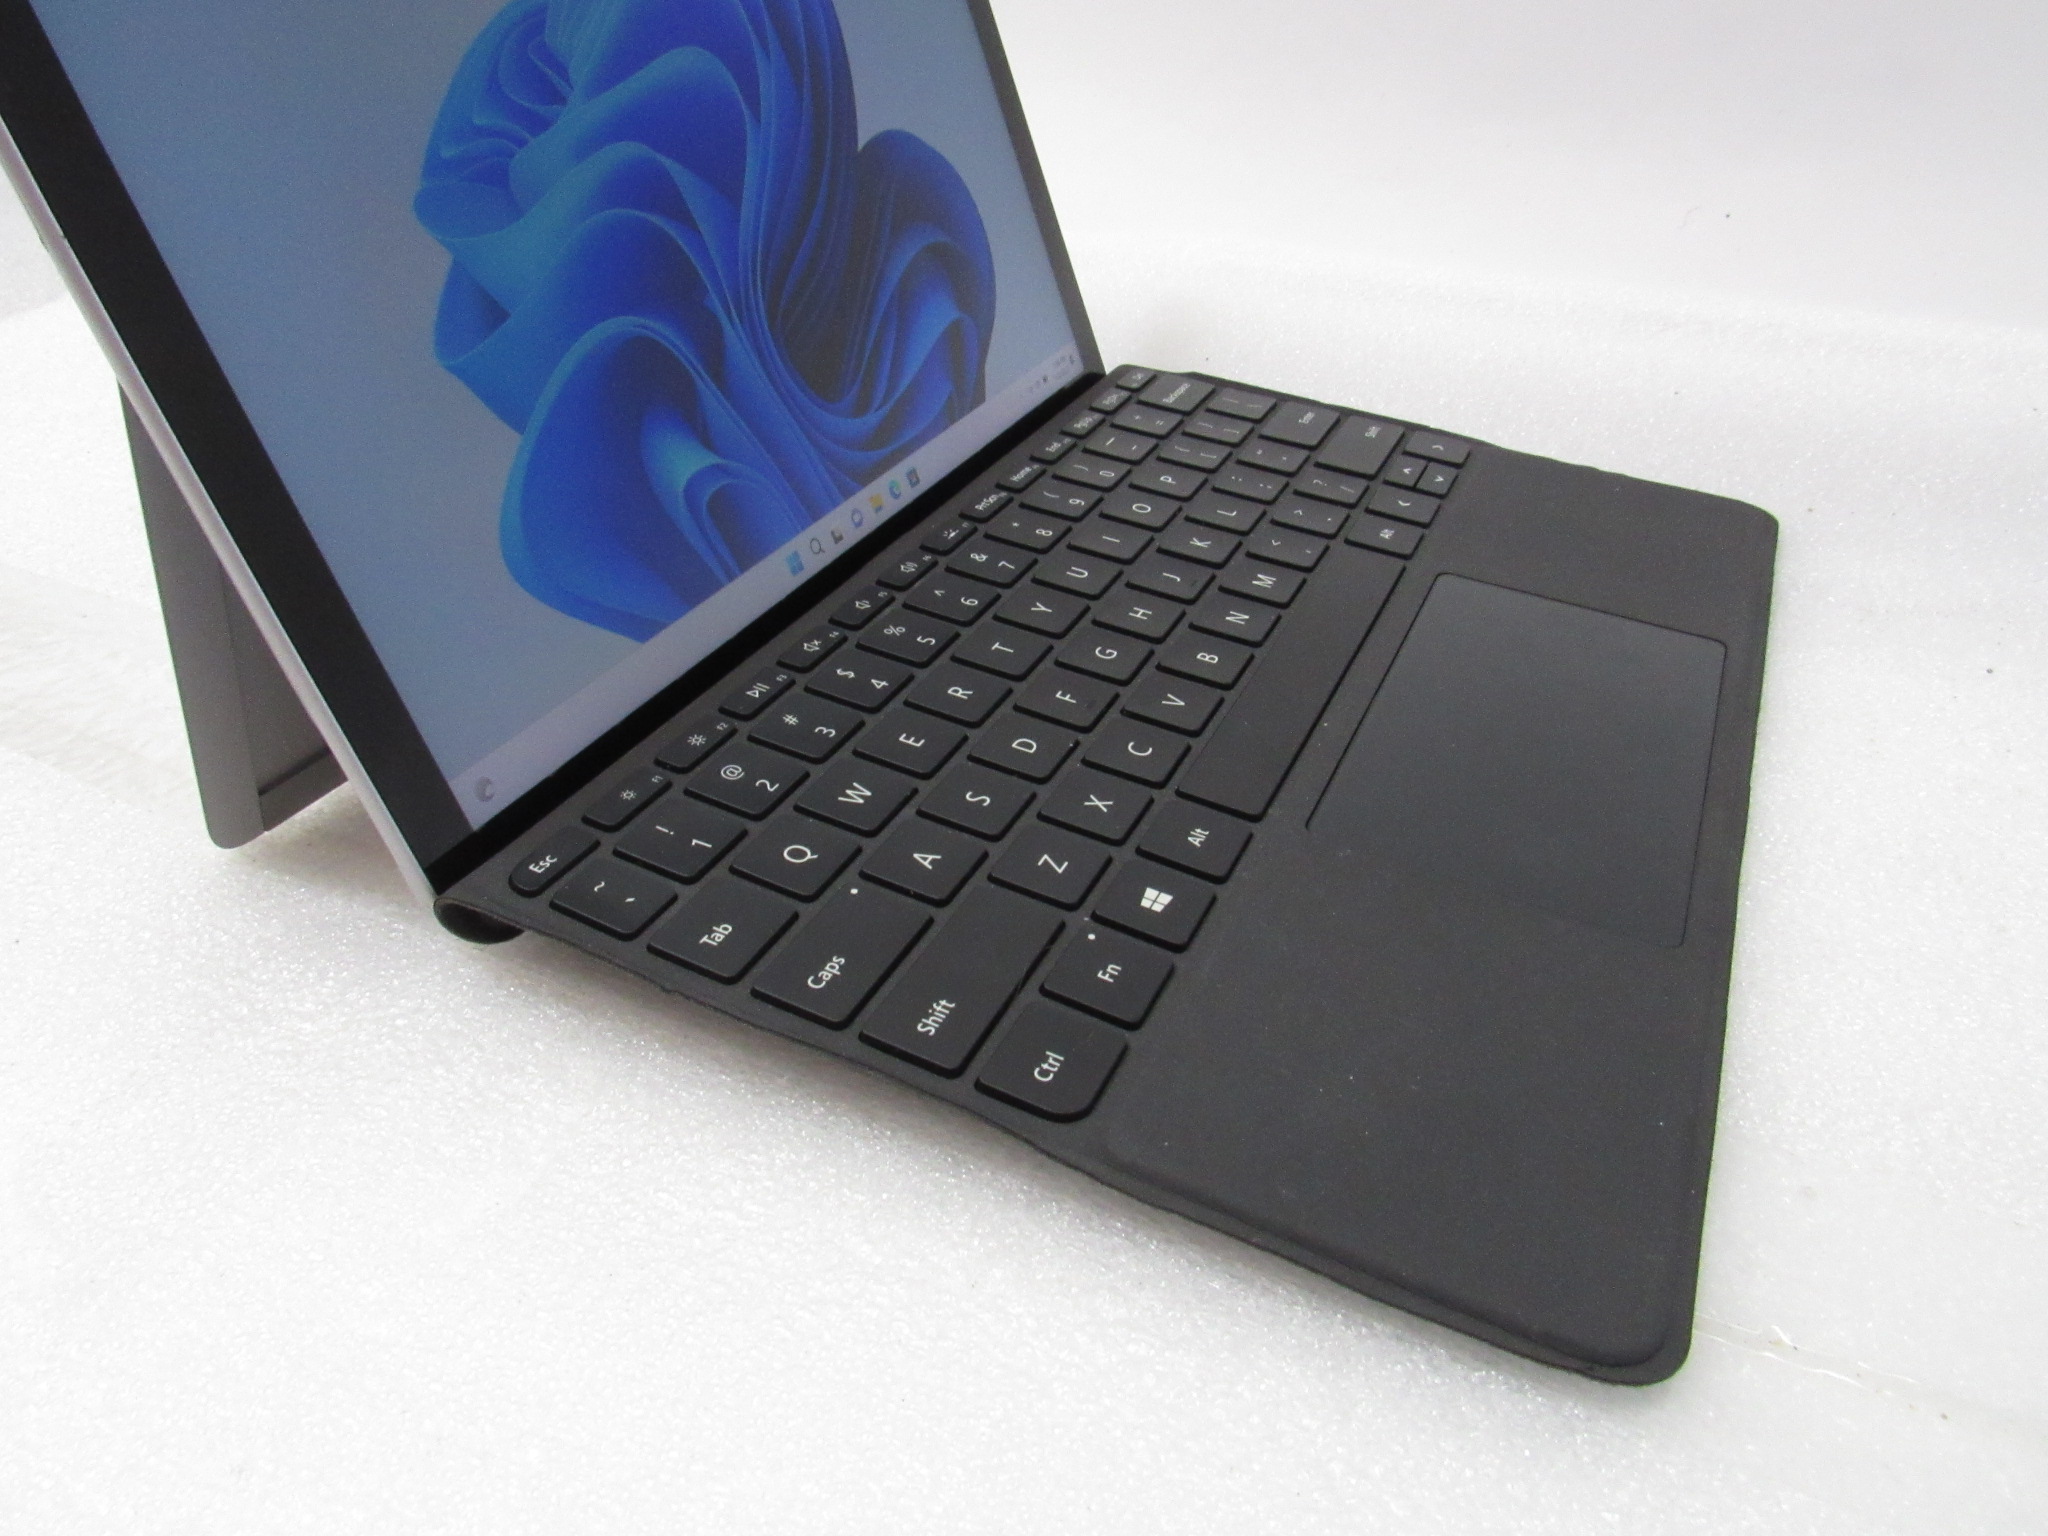 Microsoft Surface Go 2 1927 Intel Core m3-8100Y 1.10GHz 8GB Ram